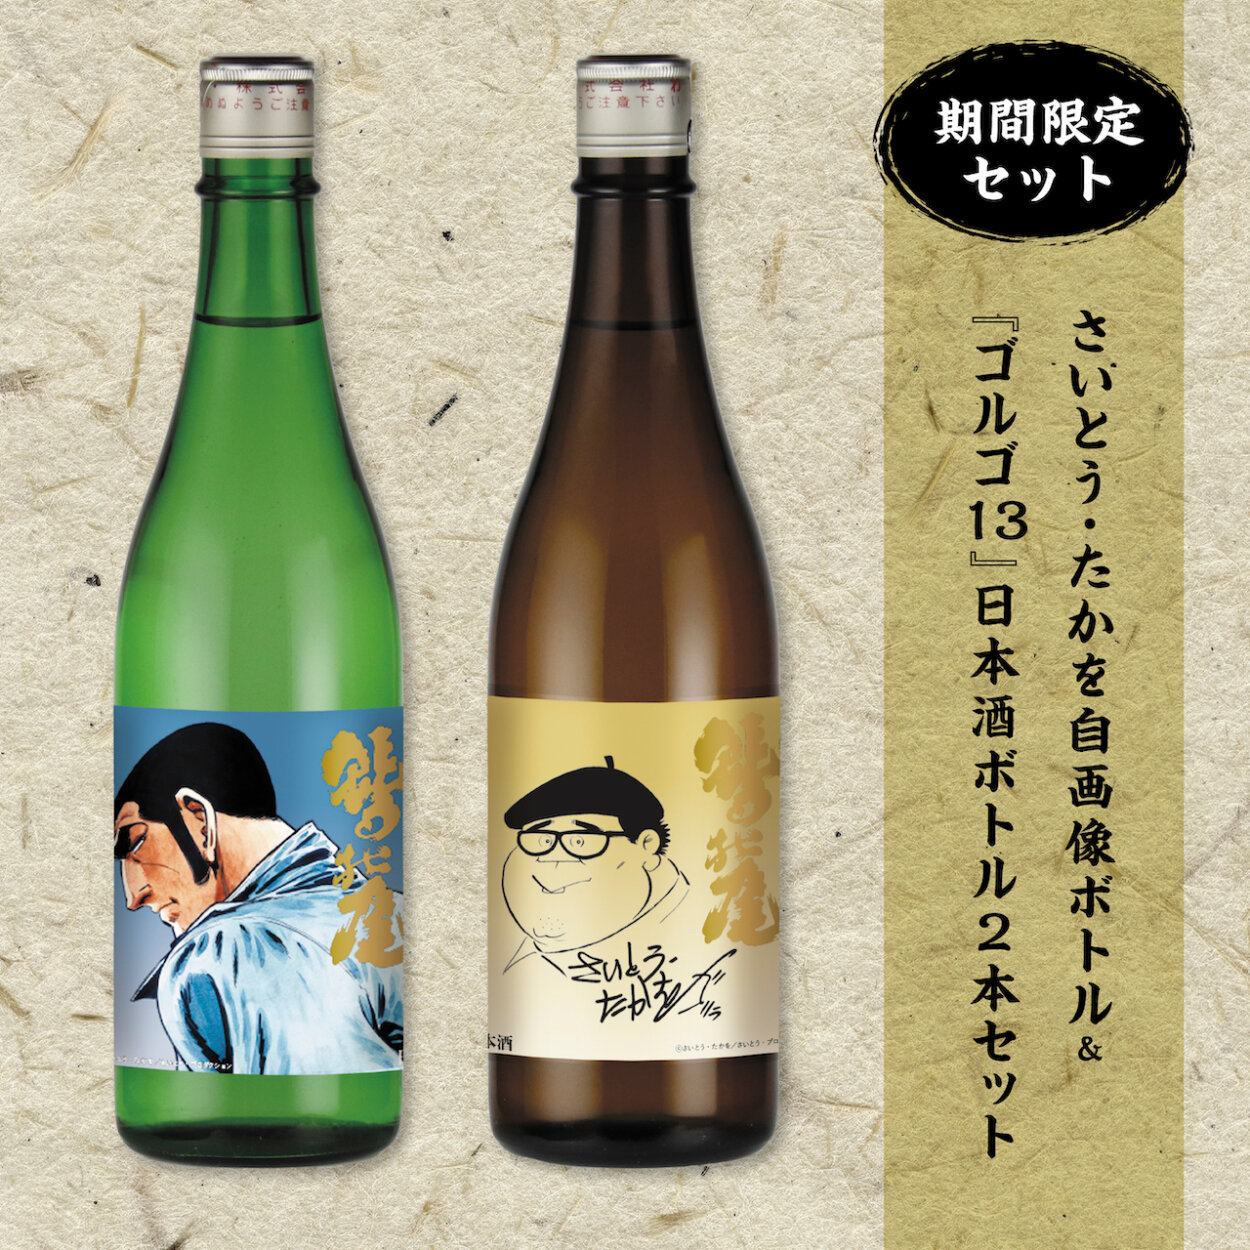 さいとう・たかを自画像ボトル＆『ゴルゴ13』日本酒ボトルボトル２本セット『鷲の尾金印原酒』『鷲の尾辛口純米酒』（6050円）